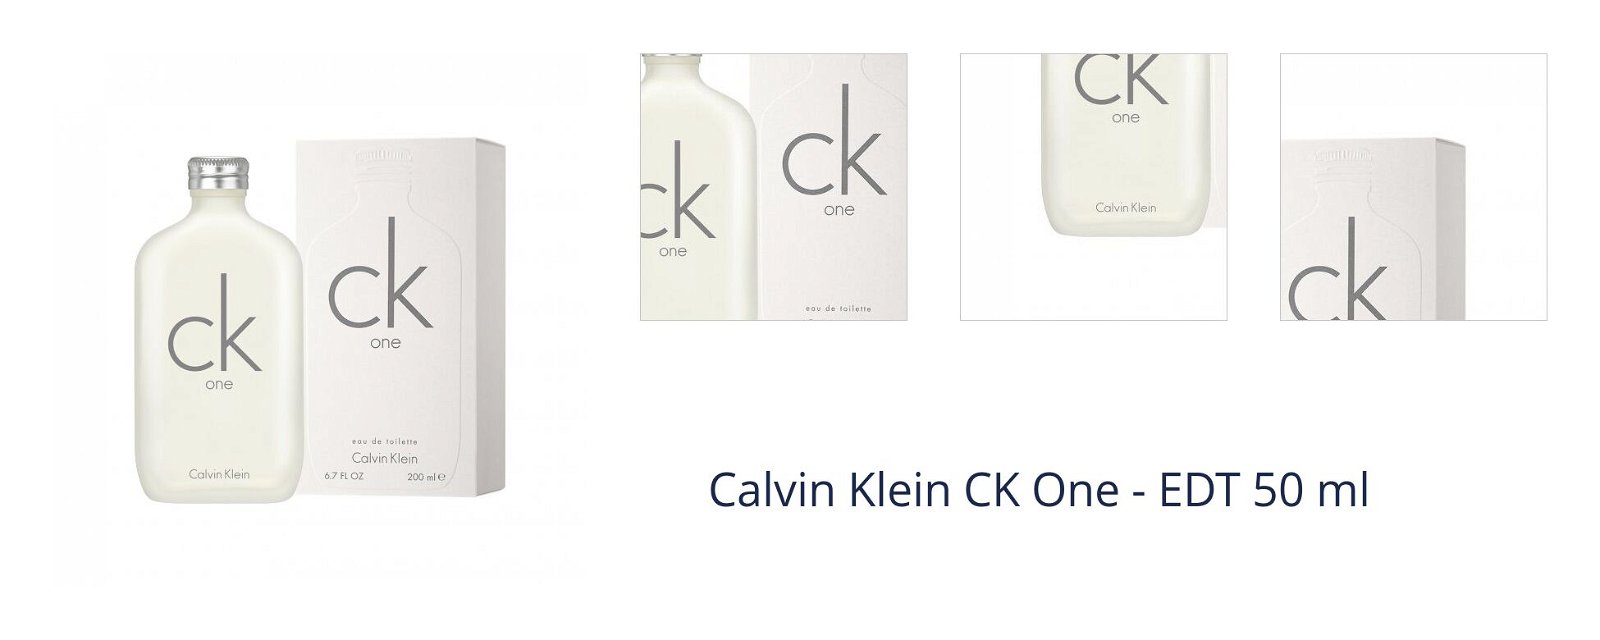 Calvin Klein CK One - EDT 50 ml 1